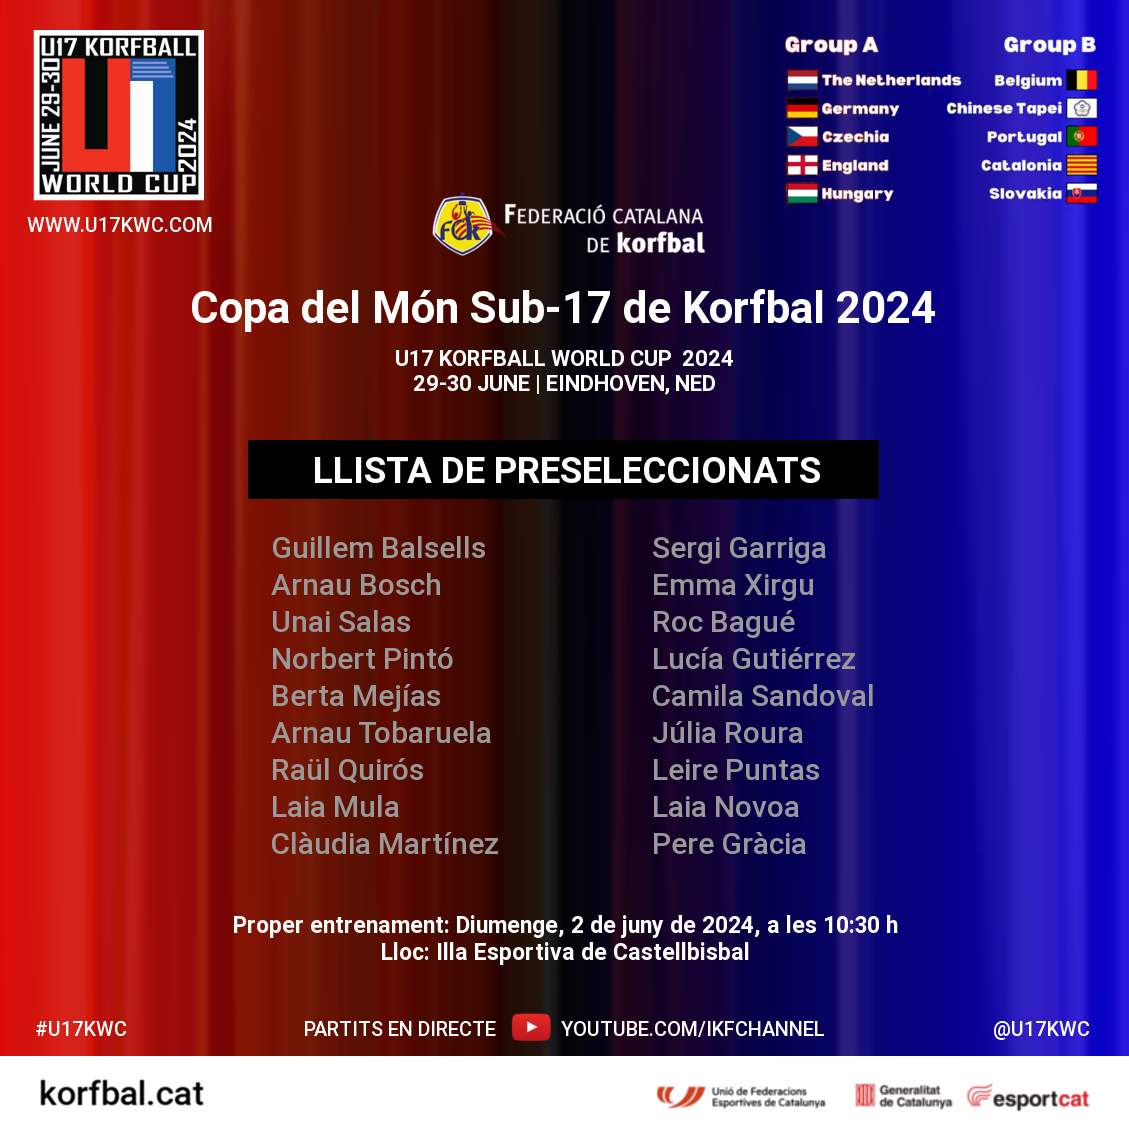 Copa del Món Sub-17 de #Korfbal 2024 - Llista de preseleccionats
📰 korfbal.cat/sub-17 | korfball.sport/?p=36706

Més info: u17kwc.com | @u17kwc

#korfball #EsportMixt #korfcat #corfbol #korfbalcatalunya #SomEsport #Som750mil #esportcat @esportcat @ufeccat